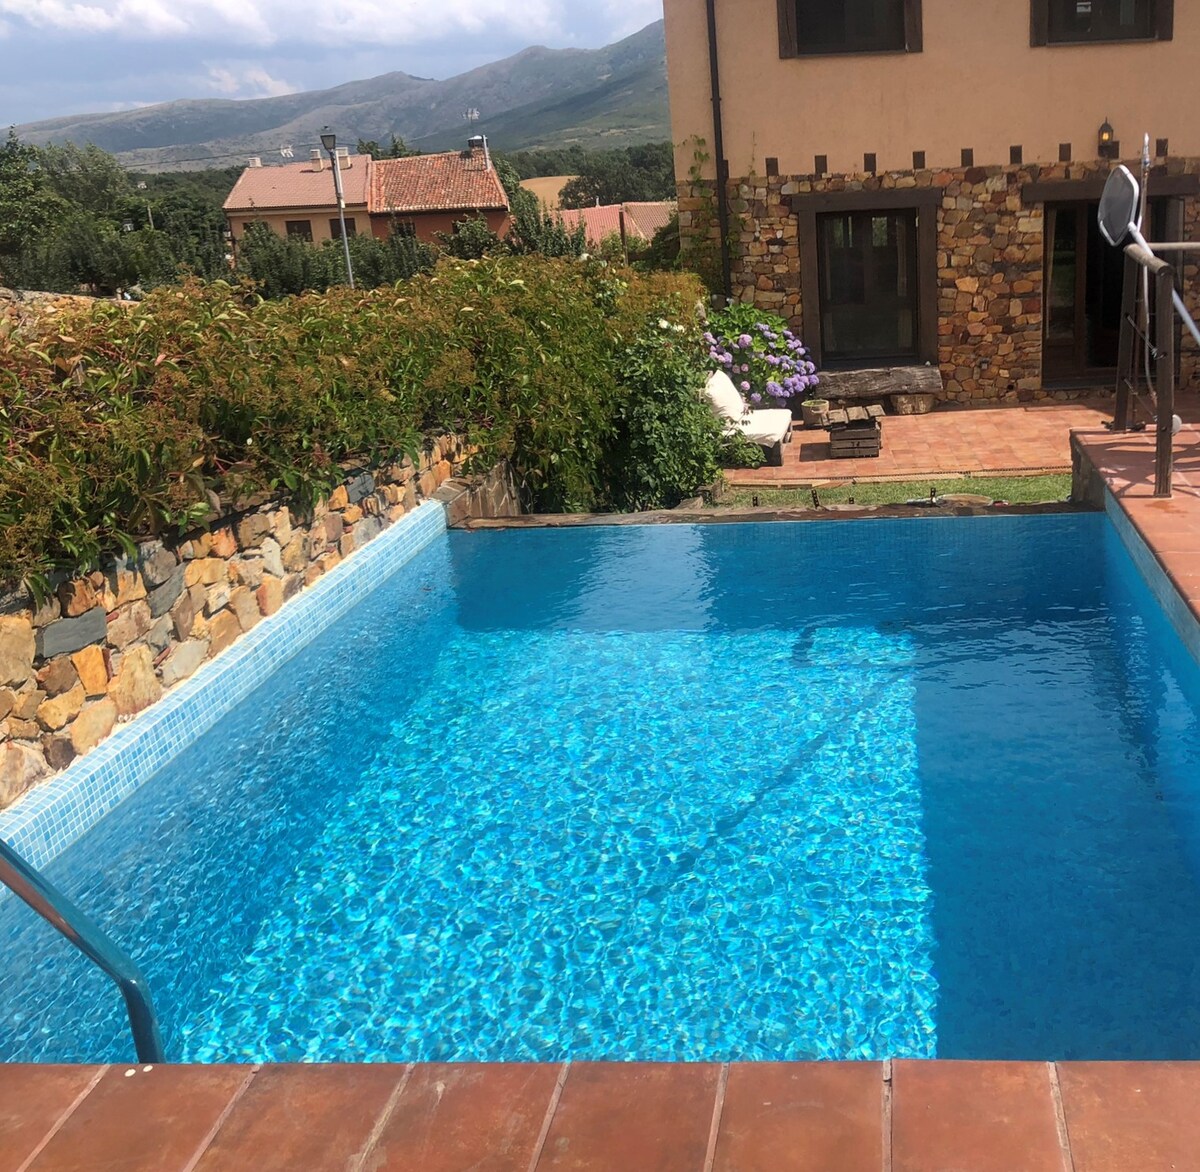 Casa rural amplia con piscina, excelentes vistas